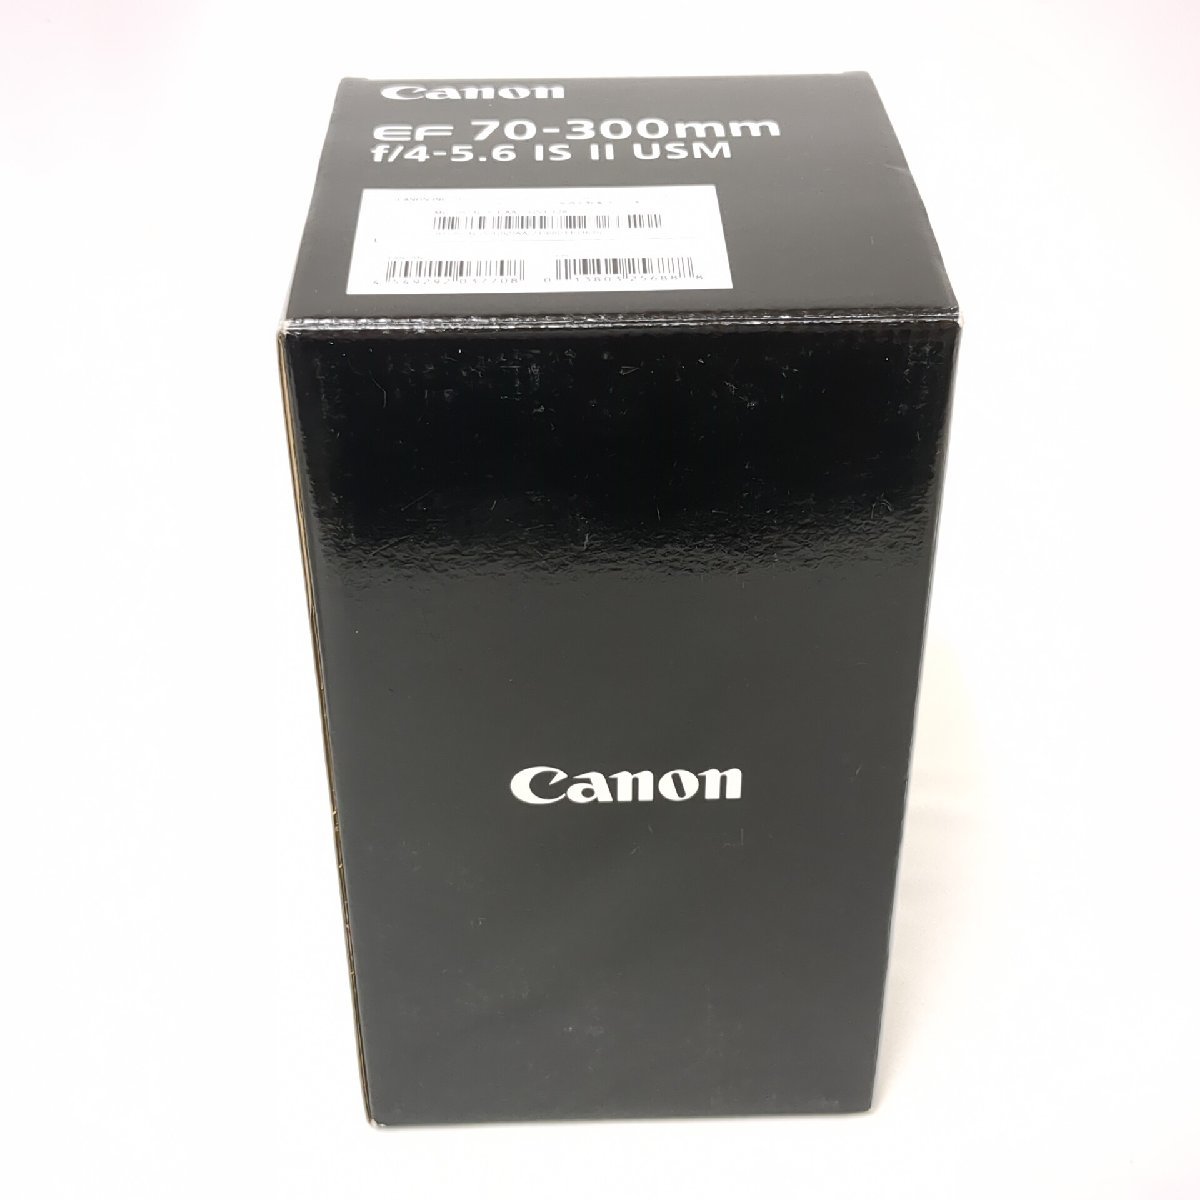 【美品】 CANON キャノン EF 70-300mm 望遠ズームレンズ f/4-5.6 IS Ⅱ USM レンズ カメラレンズ_画像7